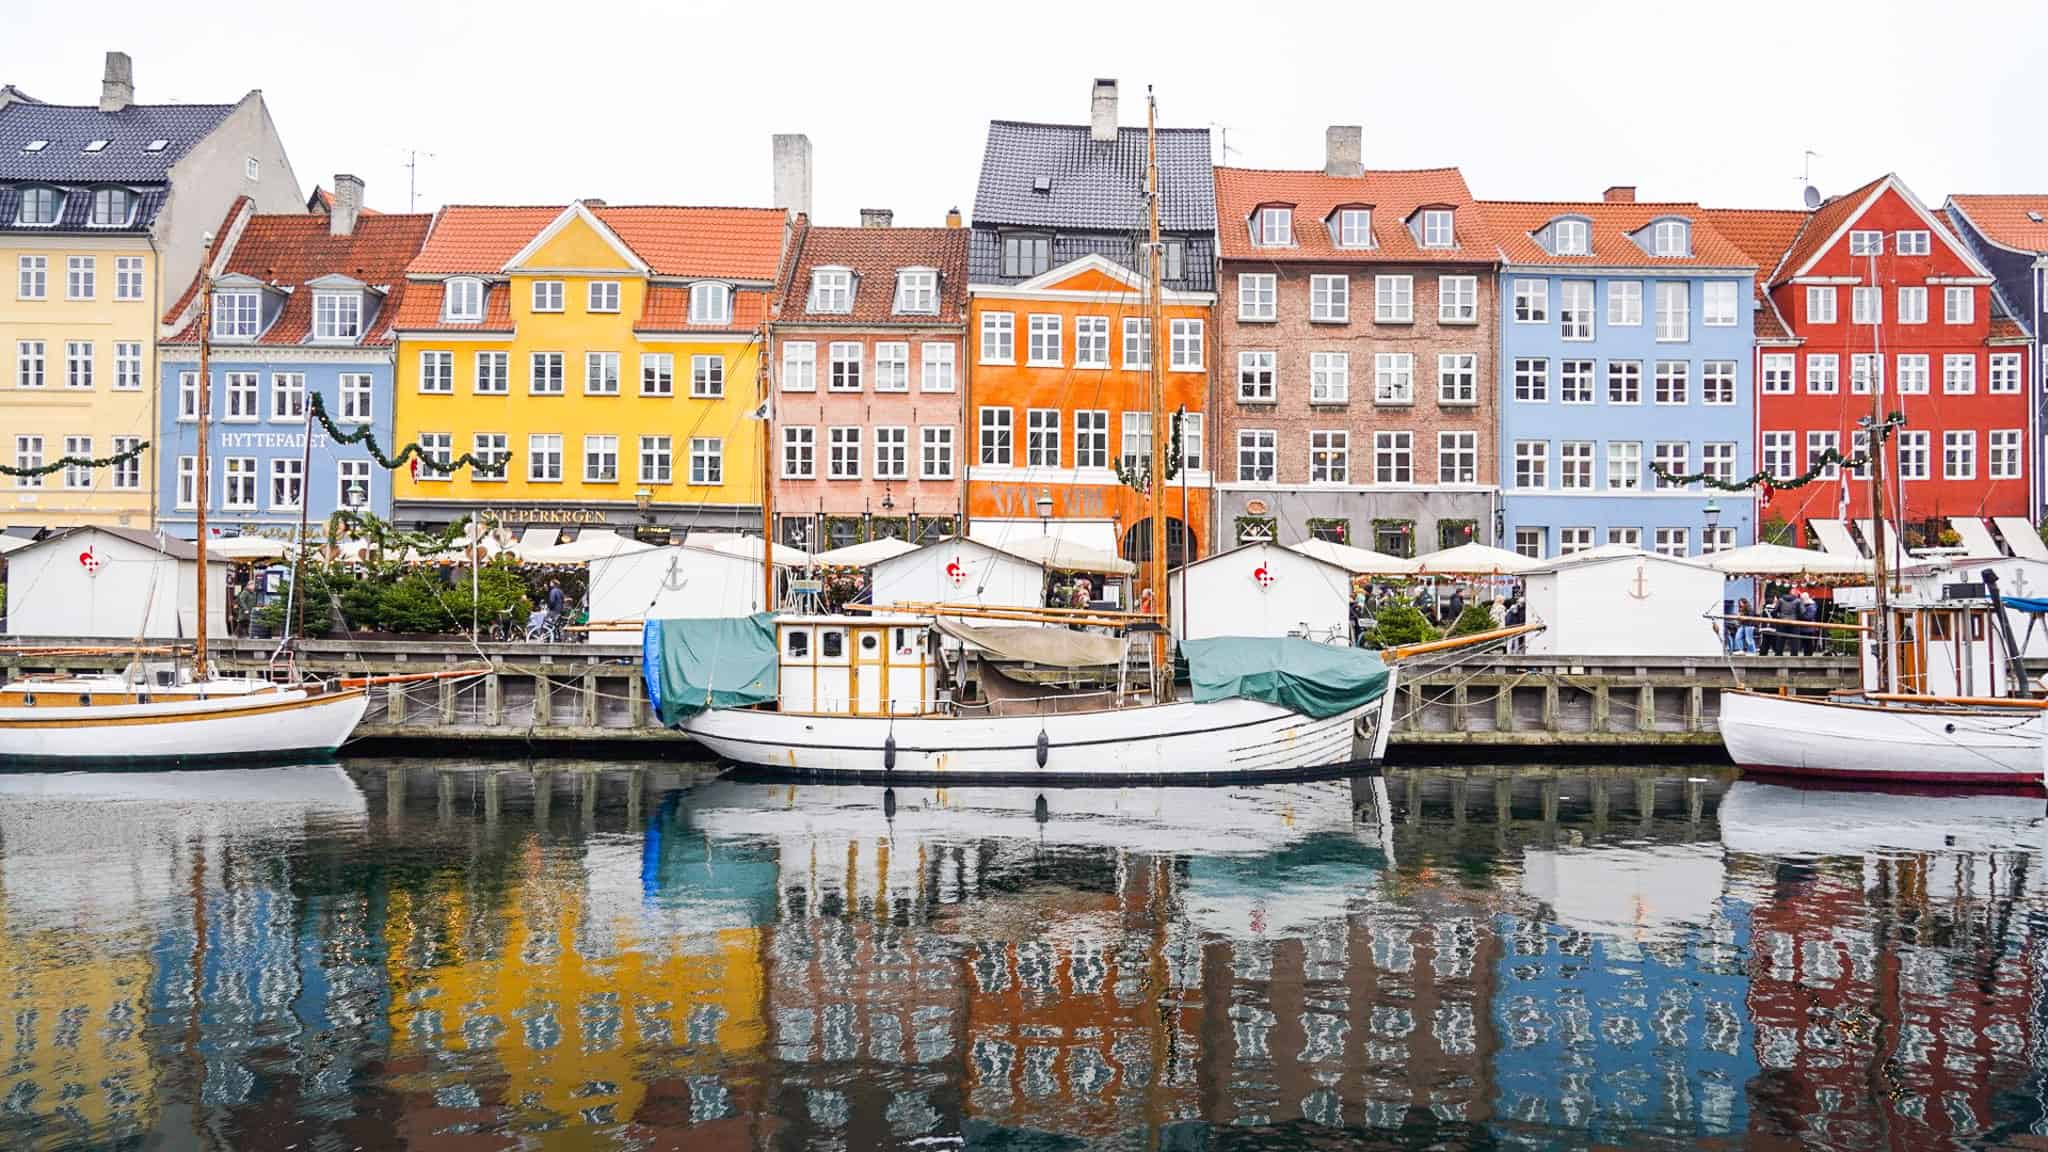 nyvhan harbor - things to do Copenhagen winter